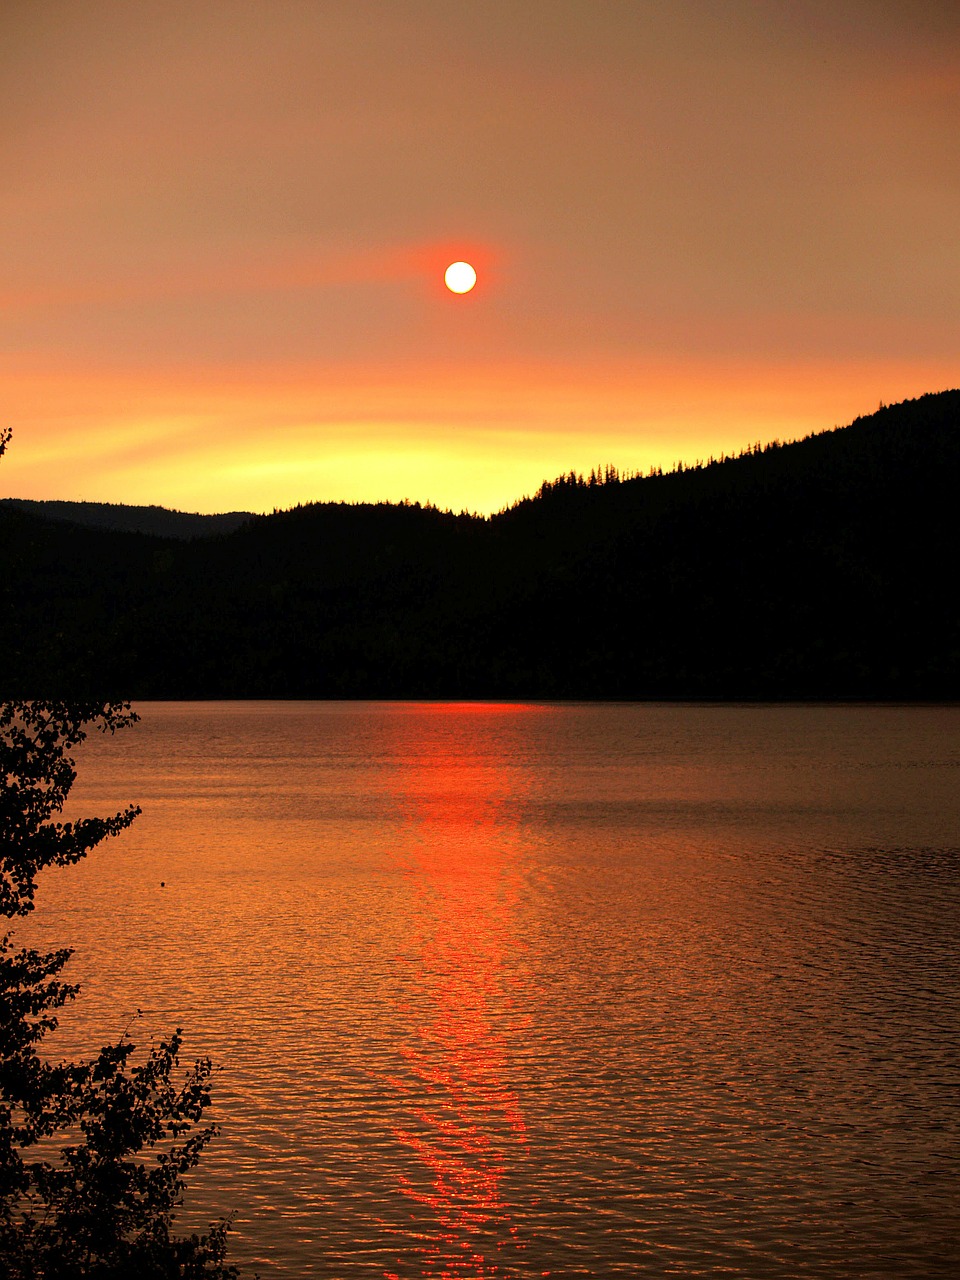 sunrise landscape scenic free photo